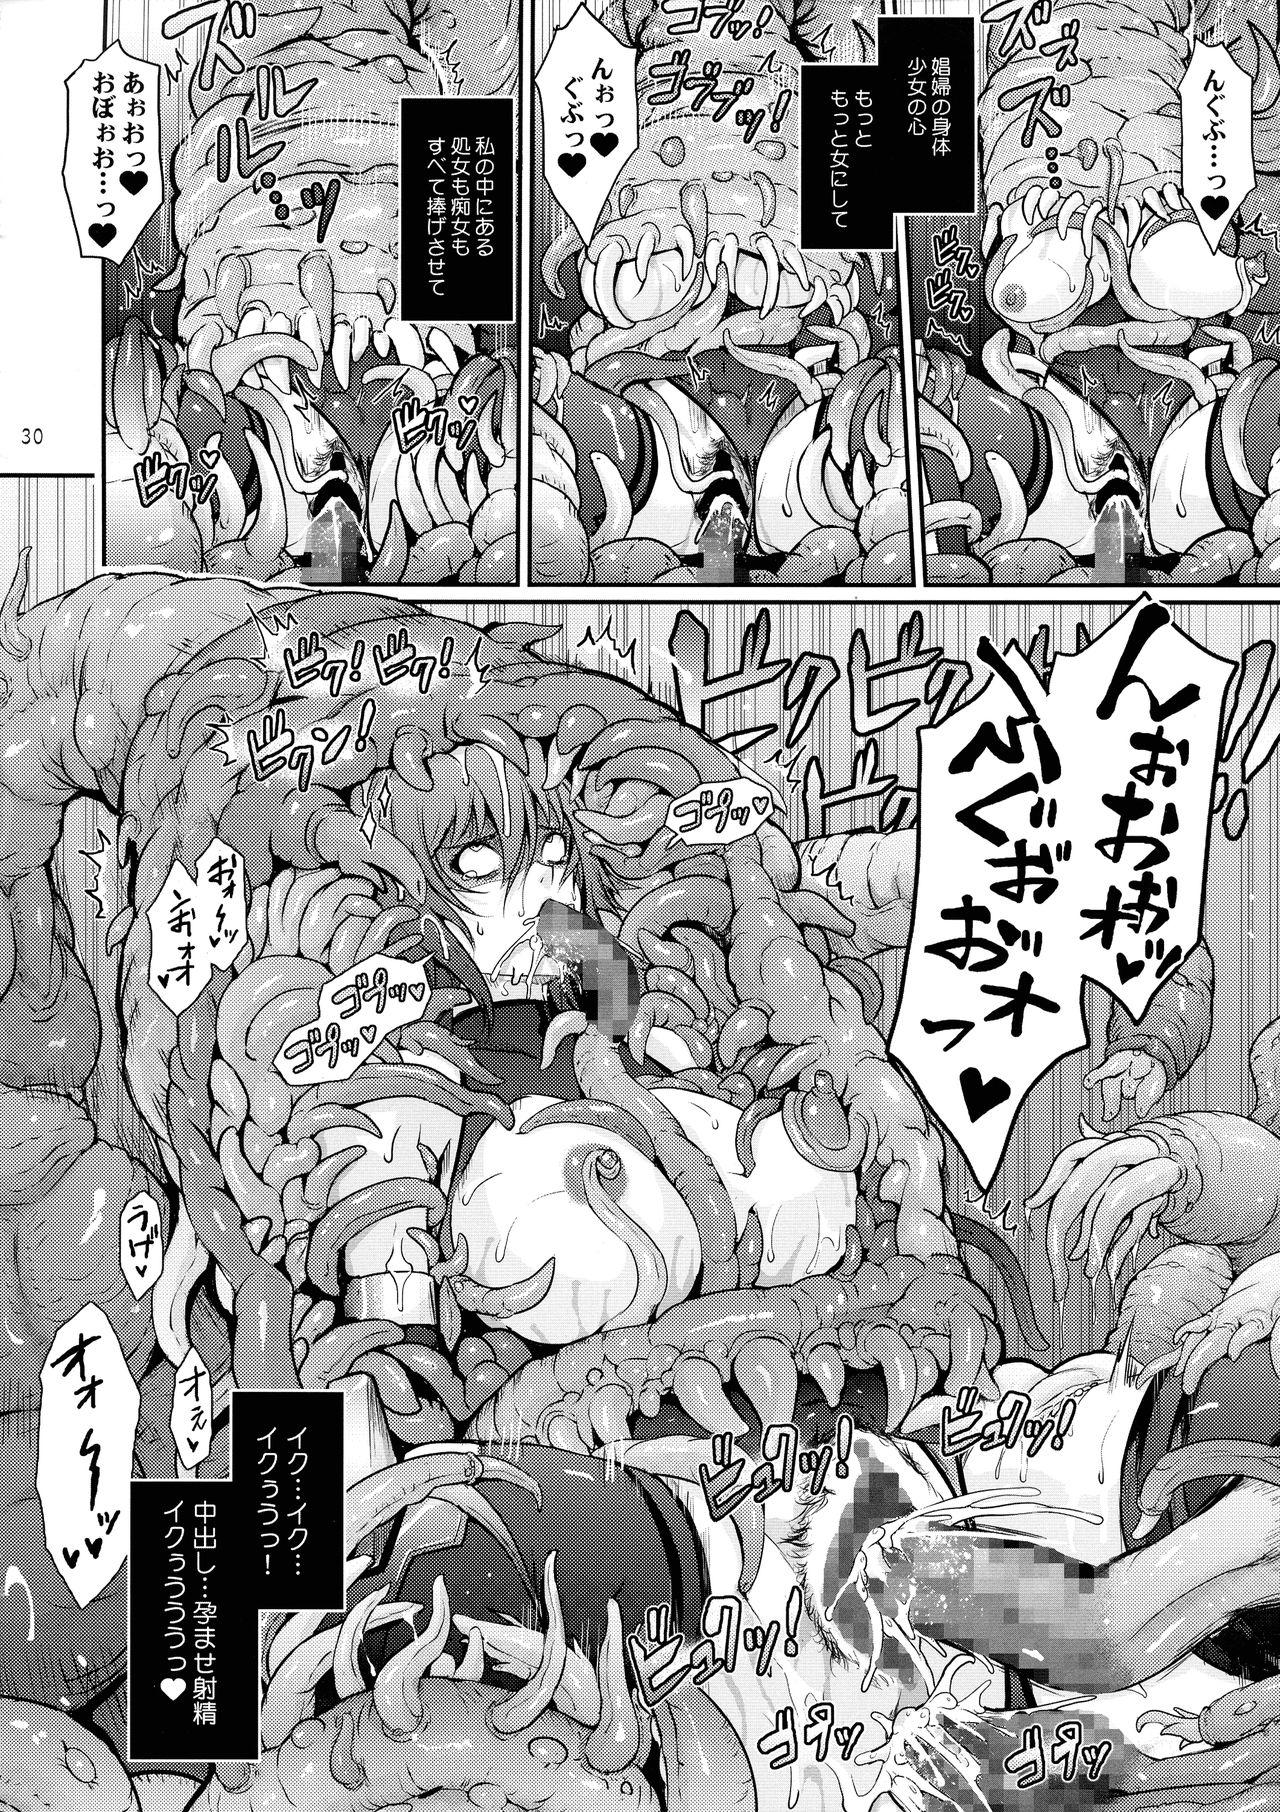 TENTACLES Taimanin Mizuki Shiranui no Seirei 29